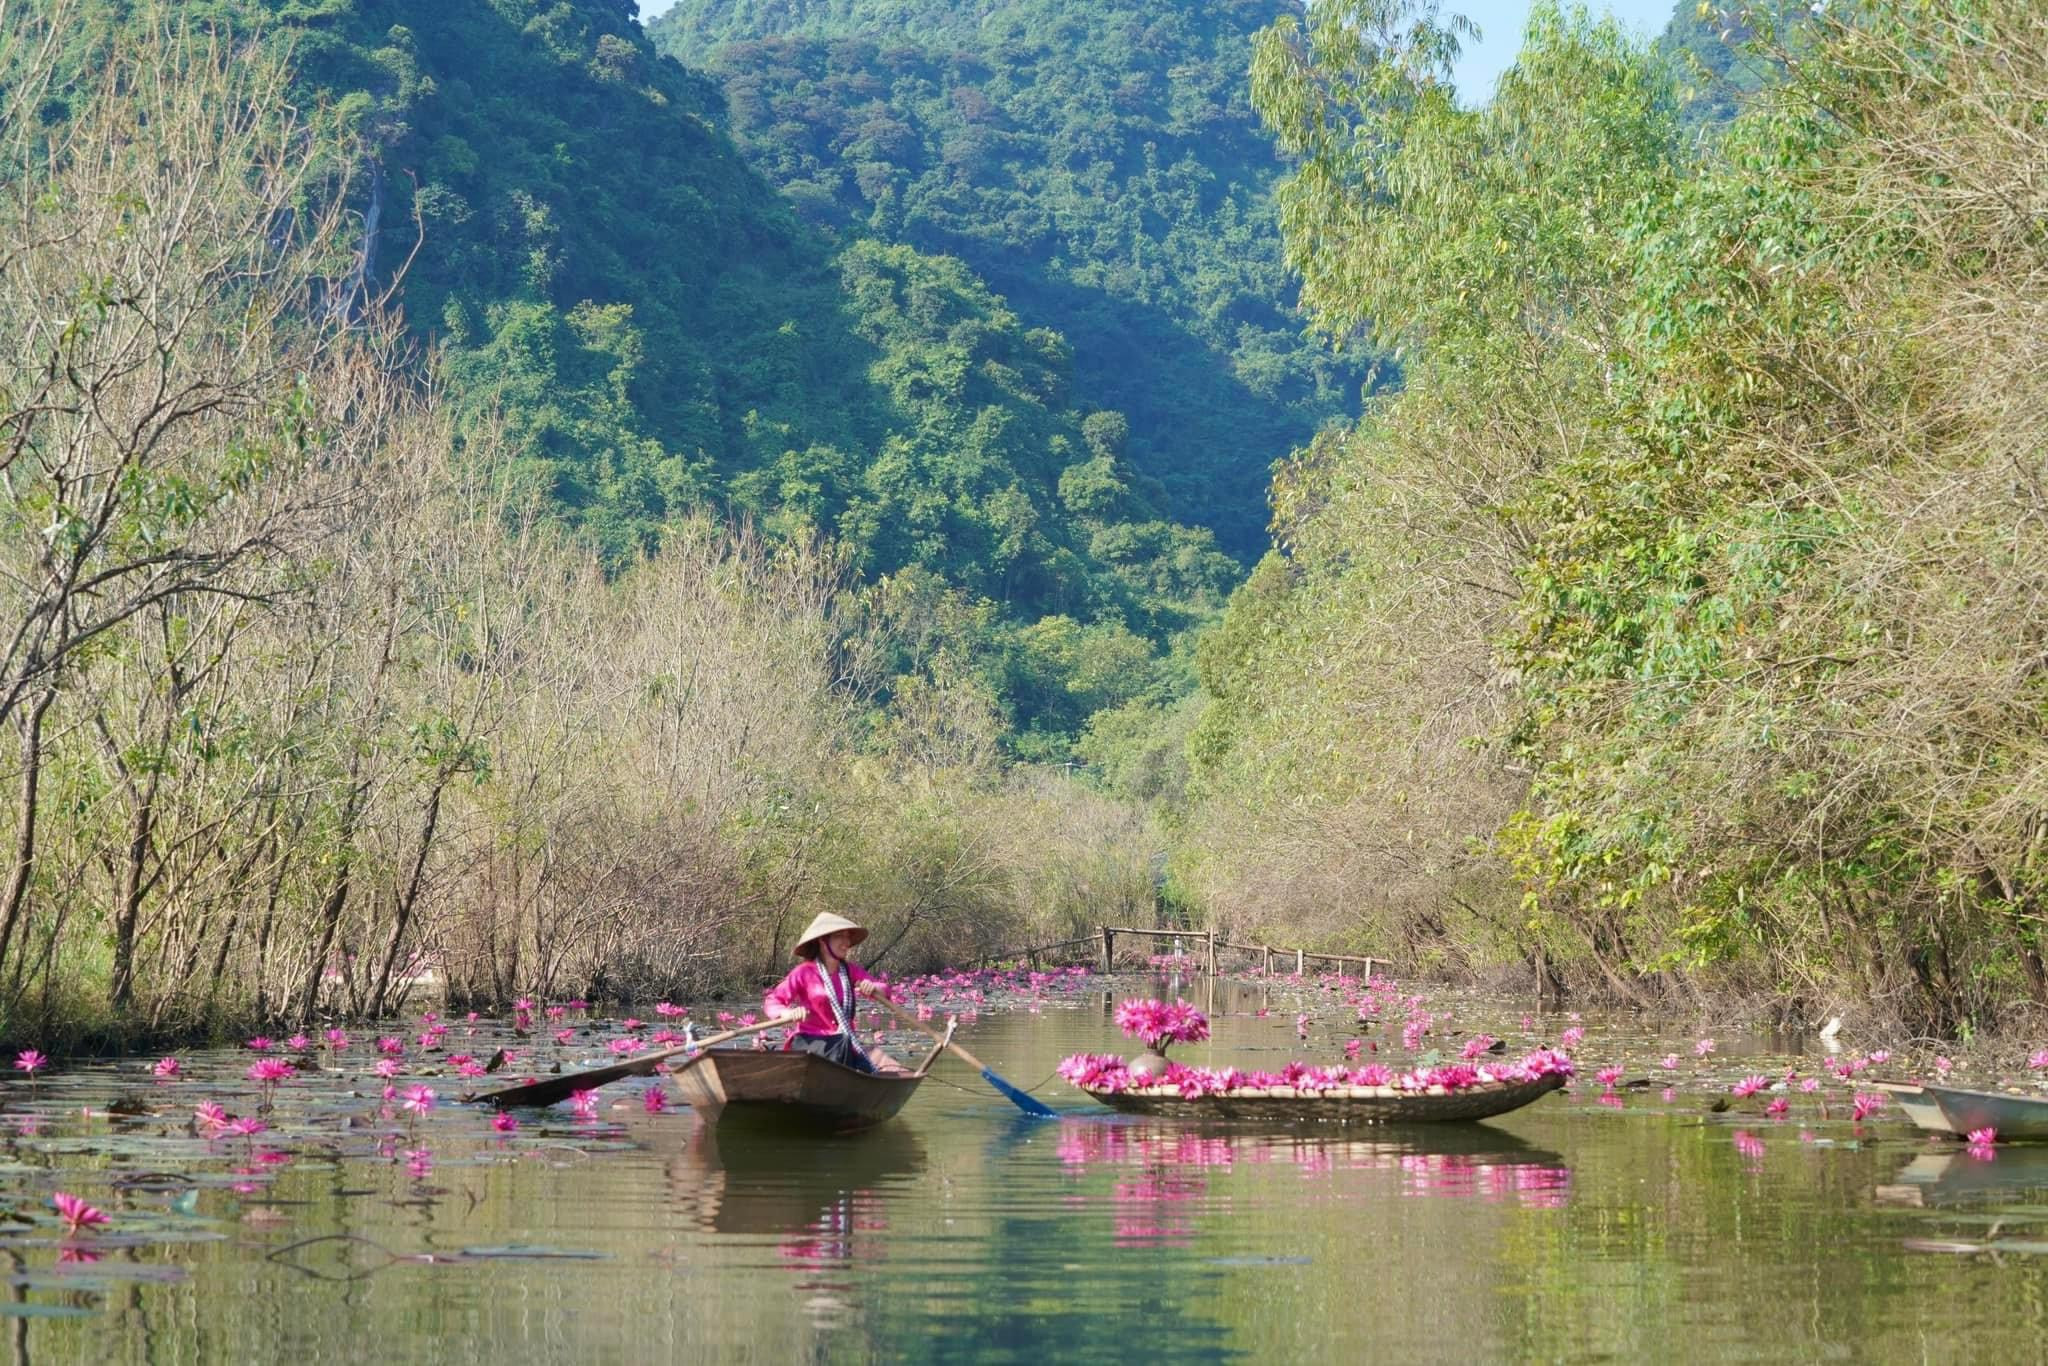 Mùa thu, tới chùa Hương ngắm thiếu nữ rạng ngời bên dòng suối 'nở hoa'